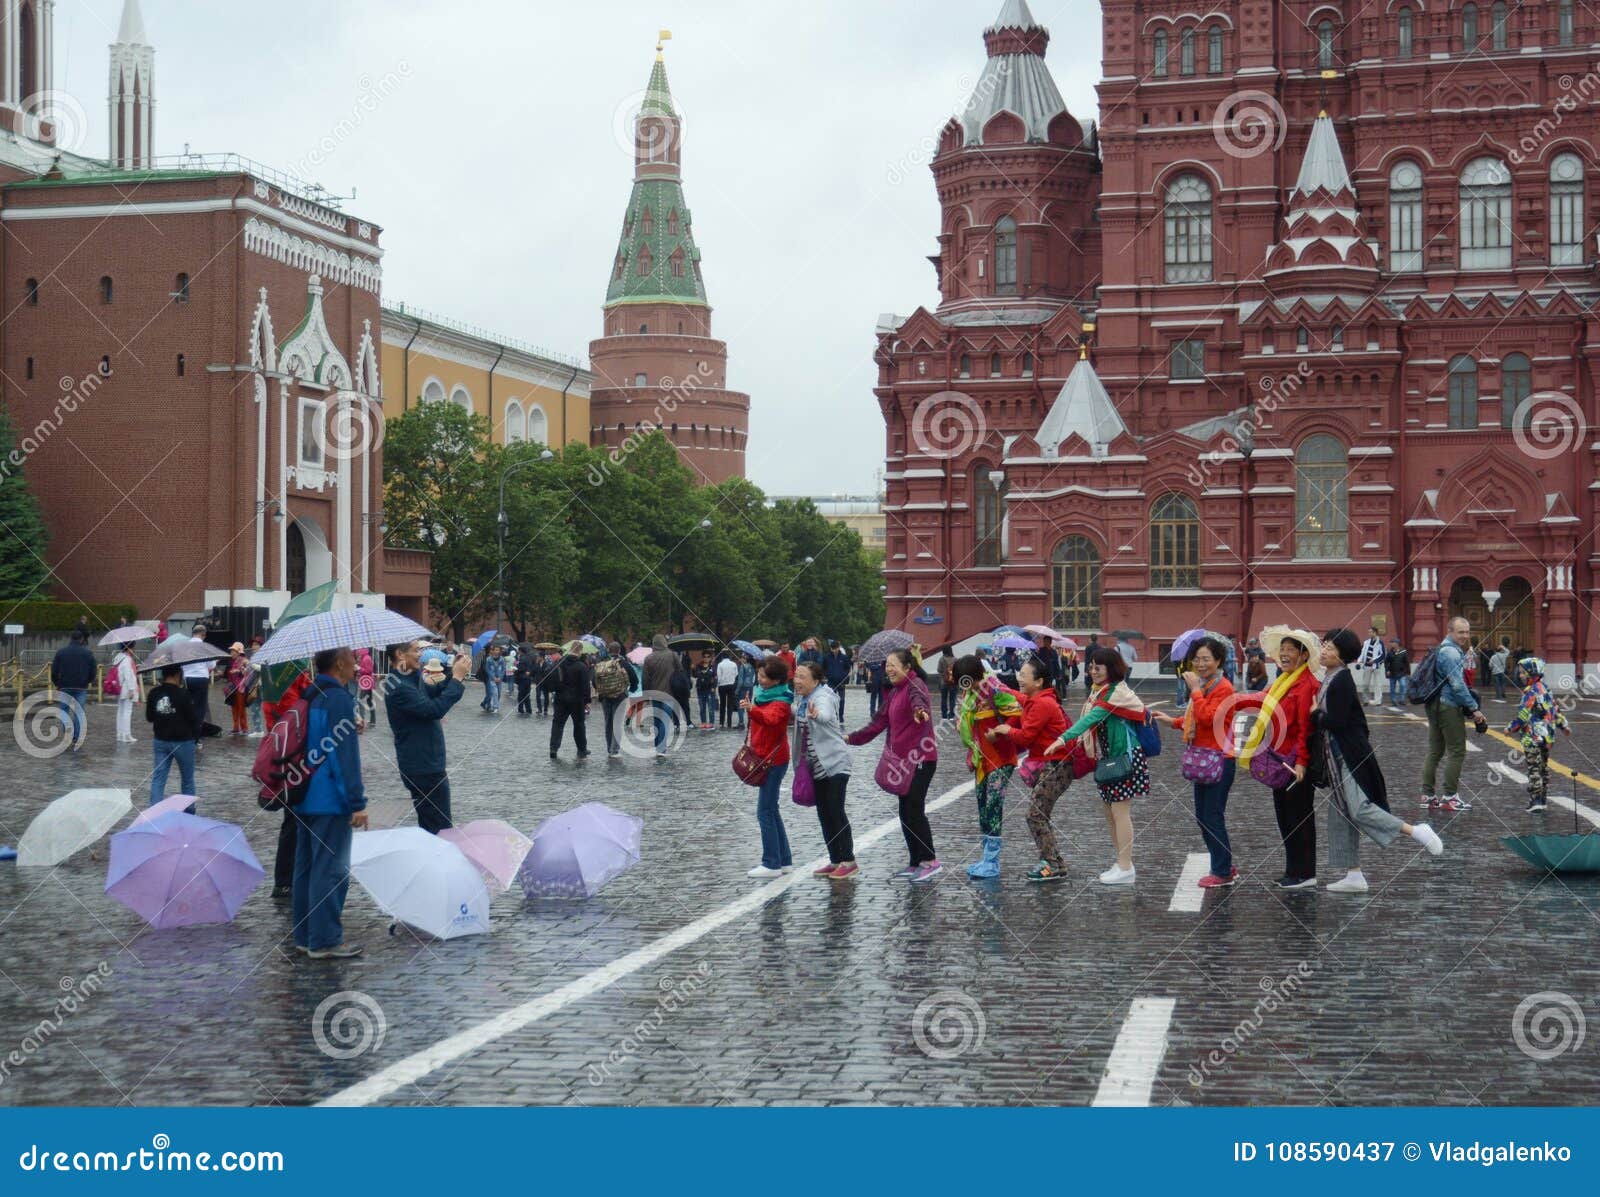 Автобусная экскурсия красная площадь. Москва красная площадь туристы. Туристы в городе на красной площади. Группа туристов на красной площади. Иностранцы фотографируются на красной площади.